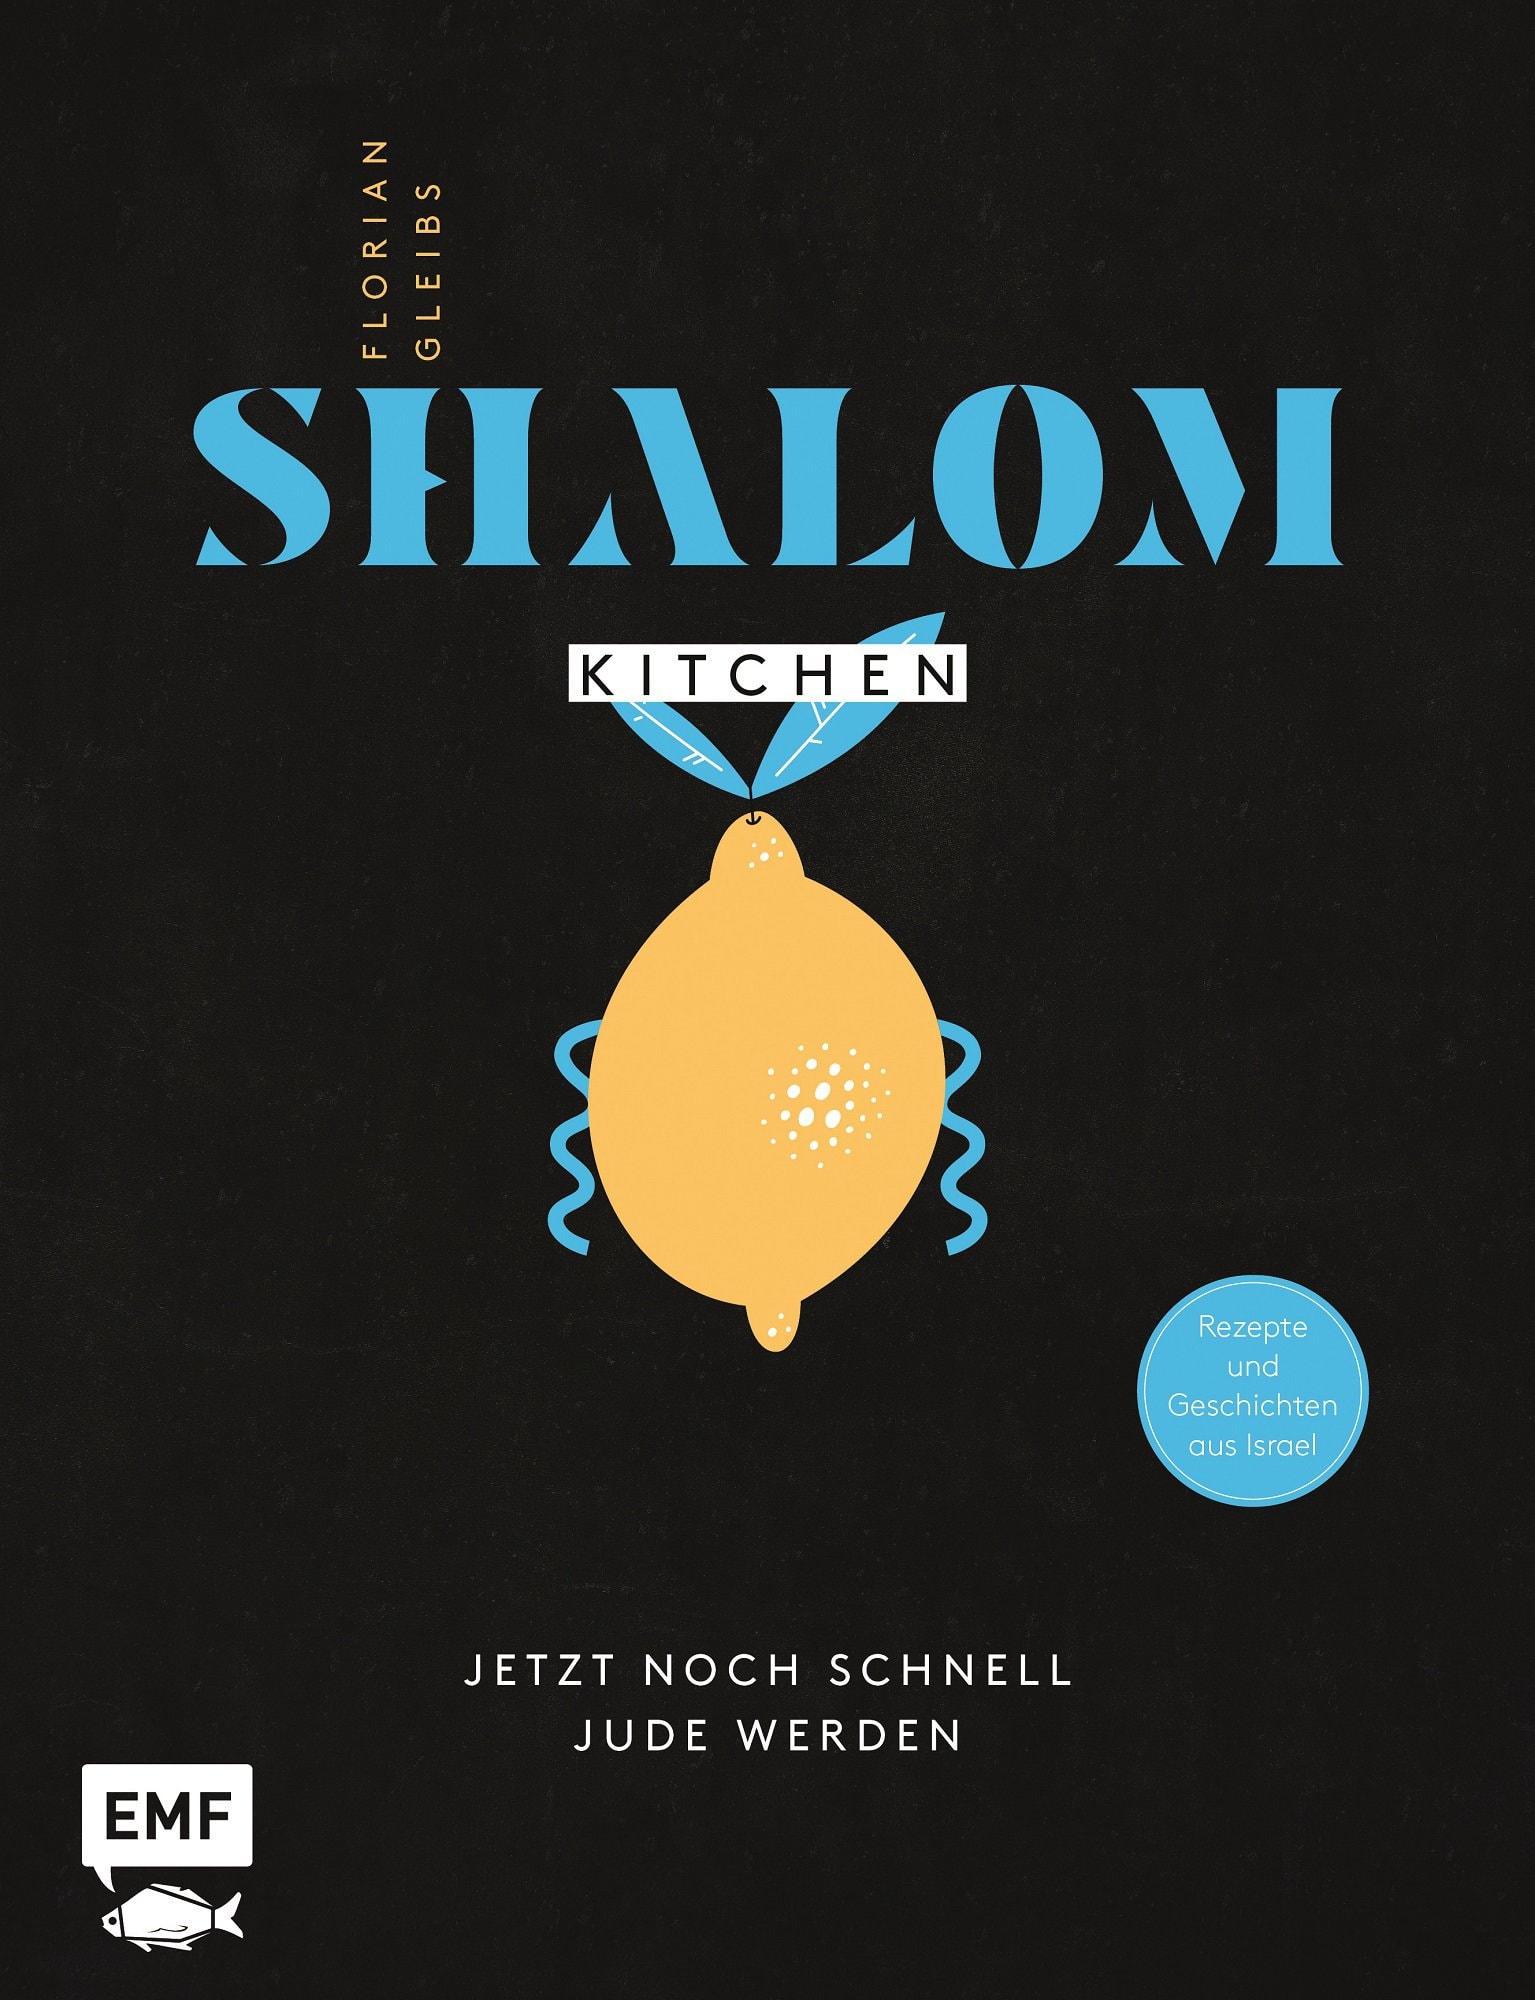 Buchcover "Shalom Kitchen"